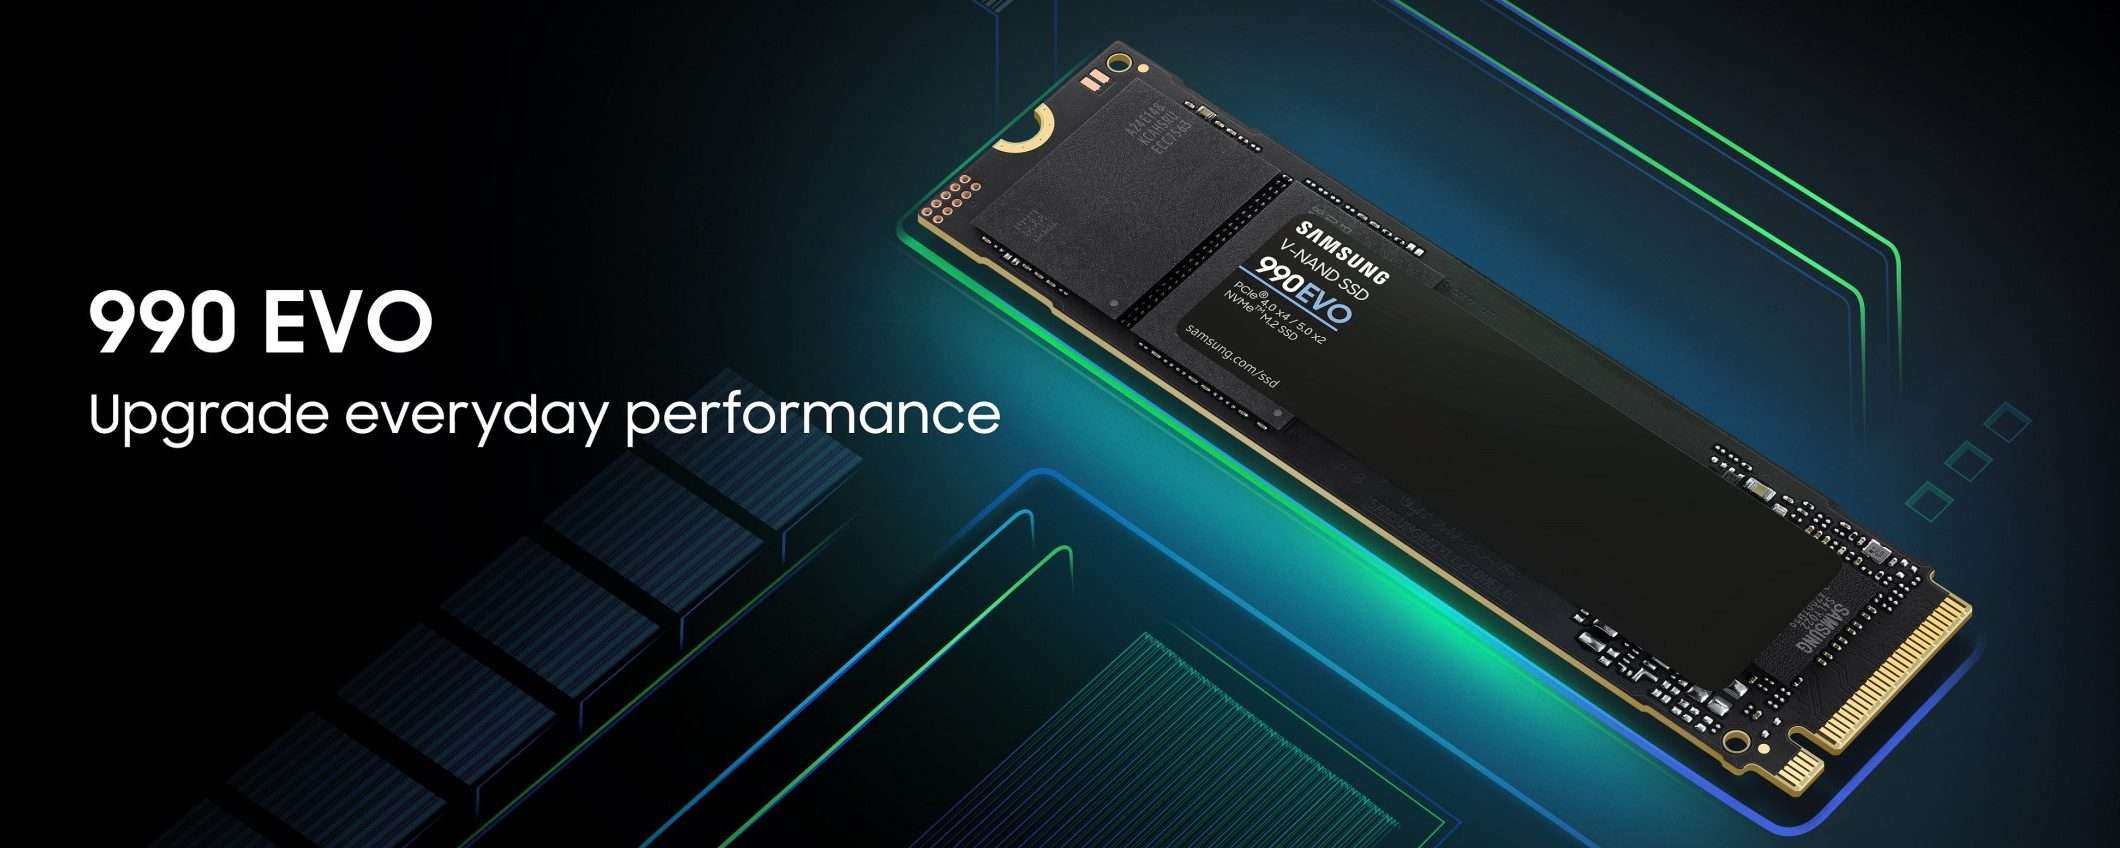 Samsung SSD 990 EVO: prestazioni ed efficienza